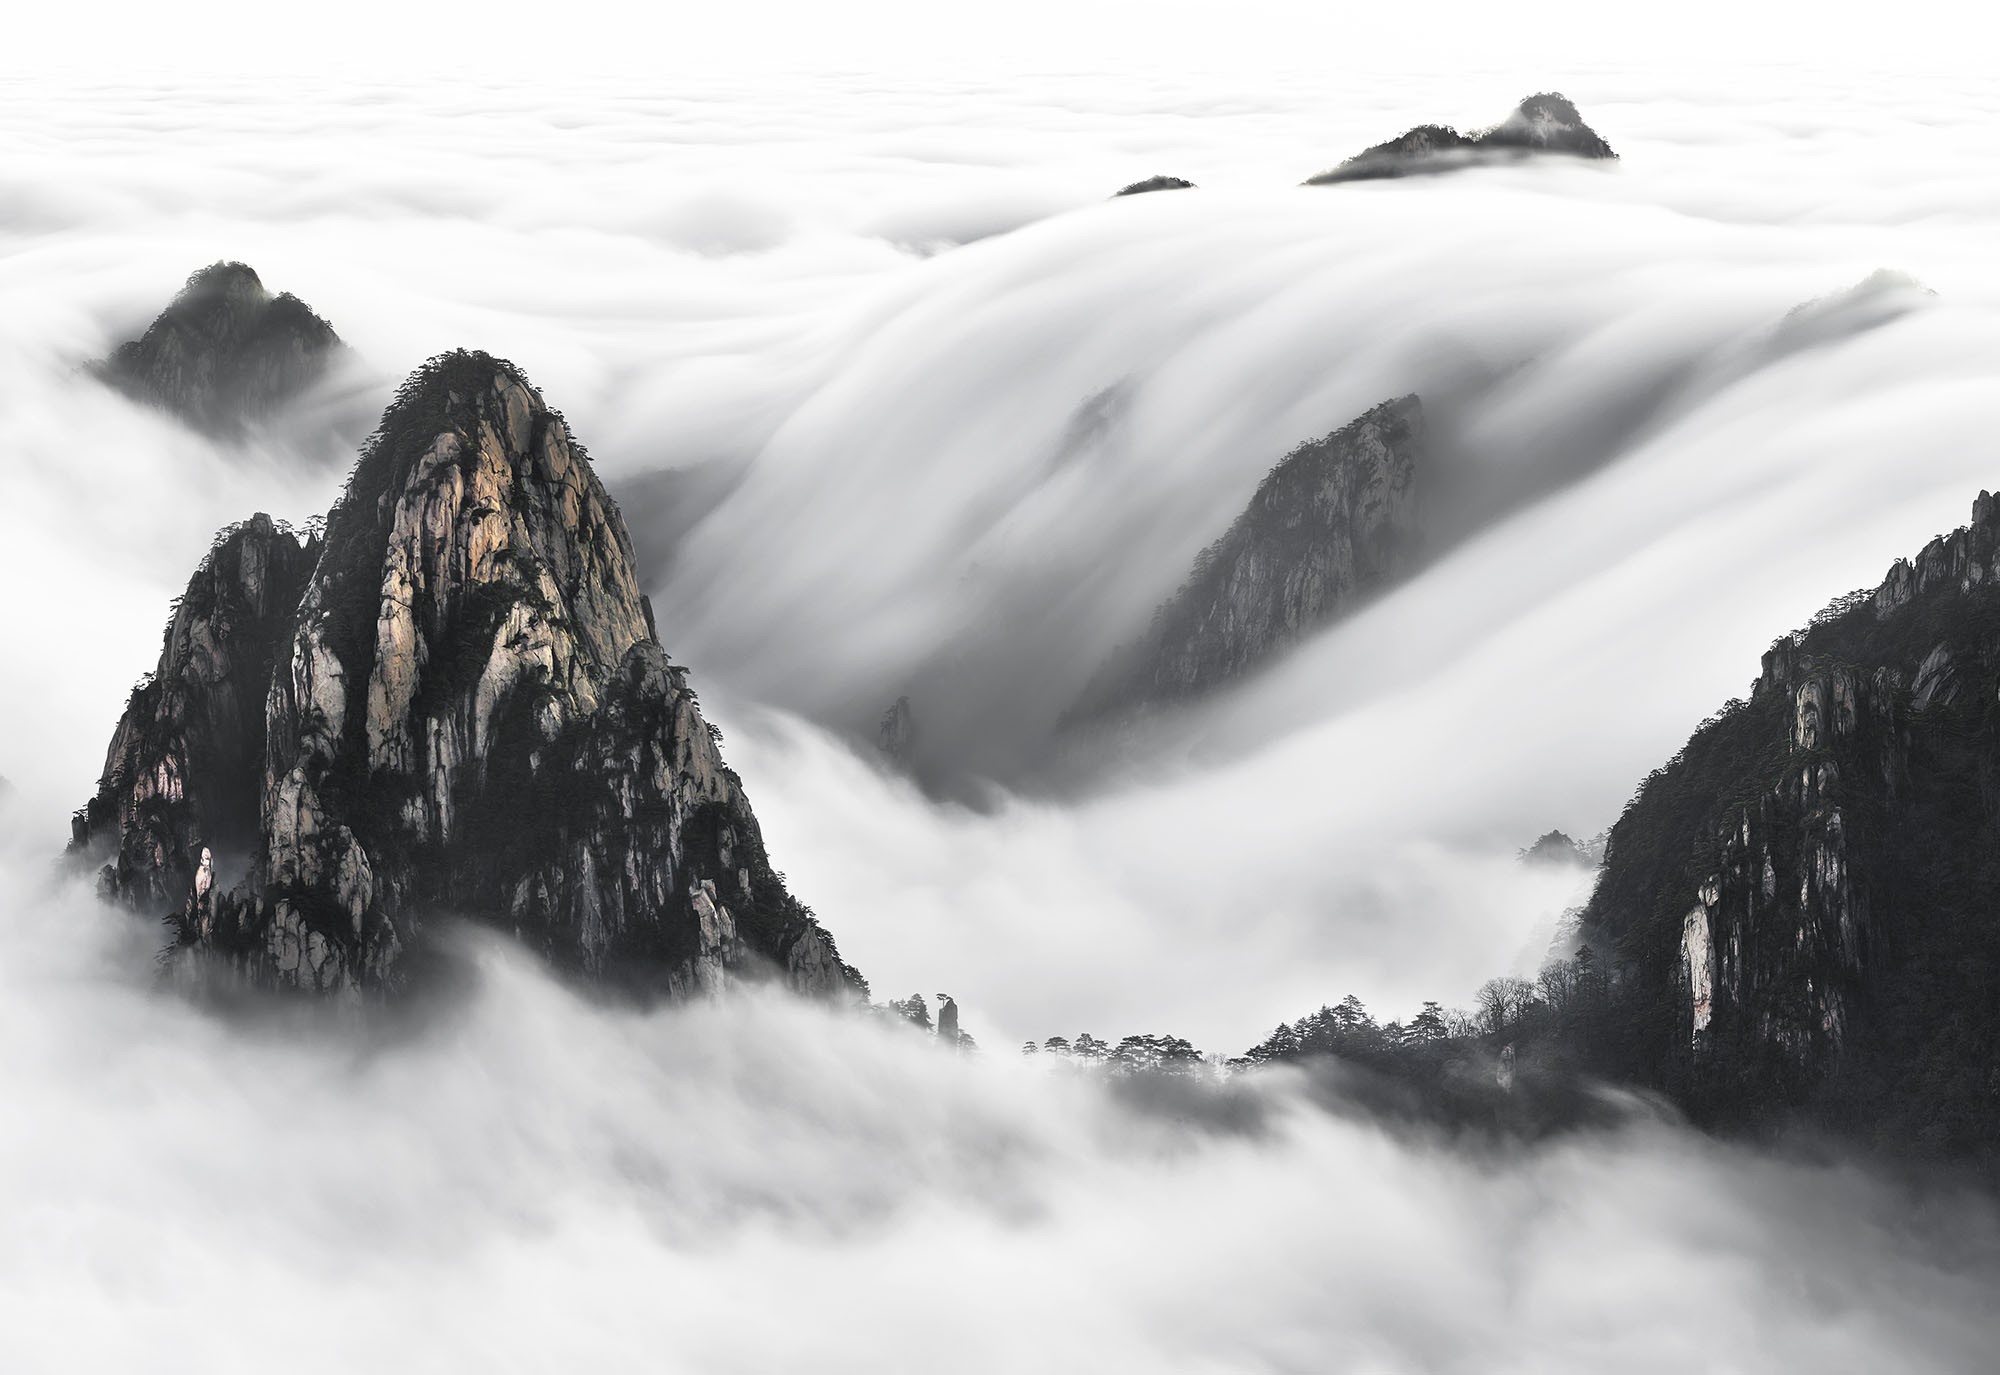 Водопад Хуаншань, Жёлтые горы, Китай, 2016. Фотограф Тьерри Борнье